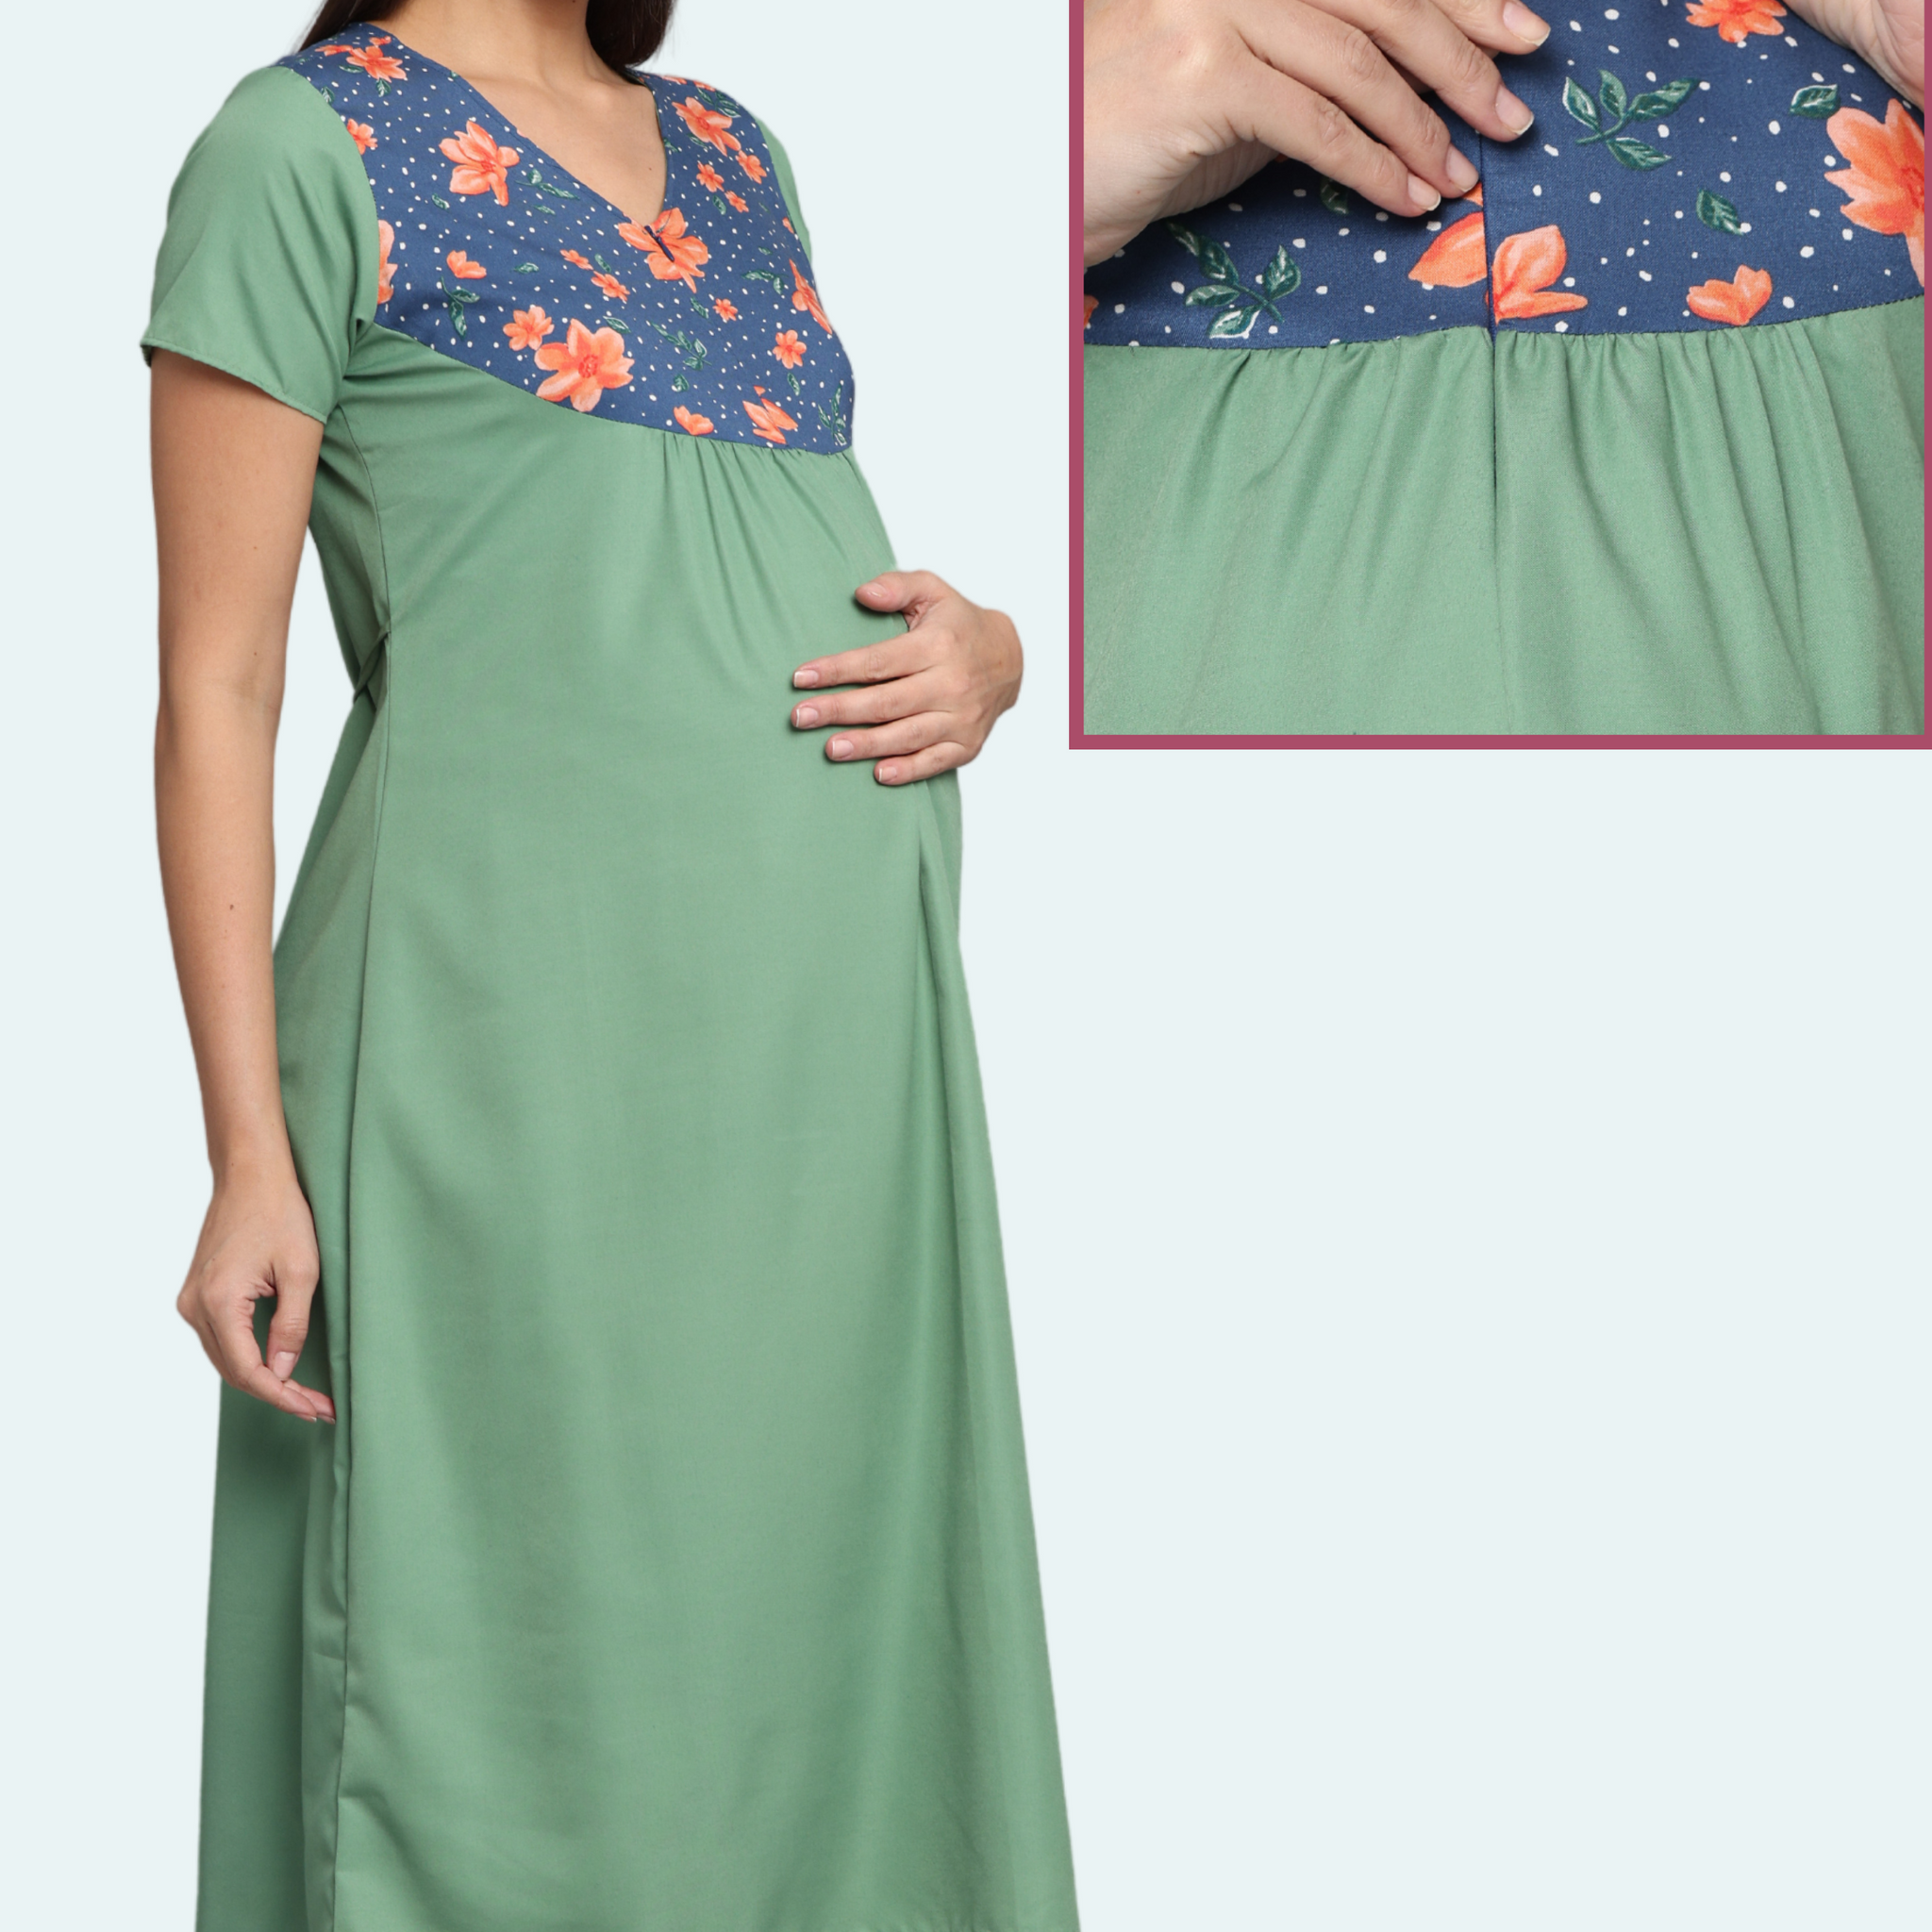 Pregnancy Feeding Gowns